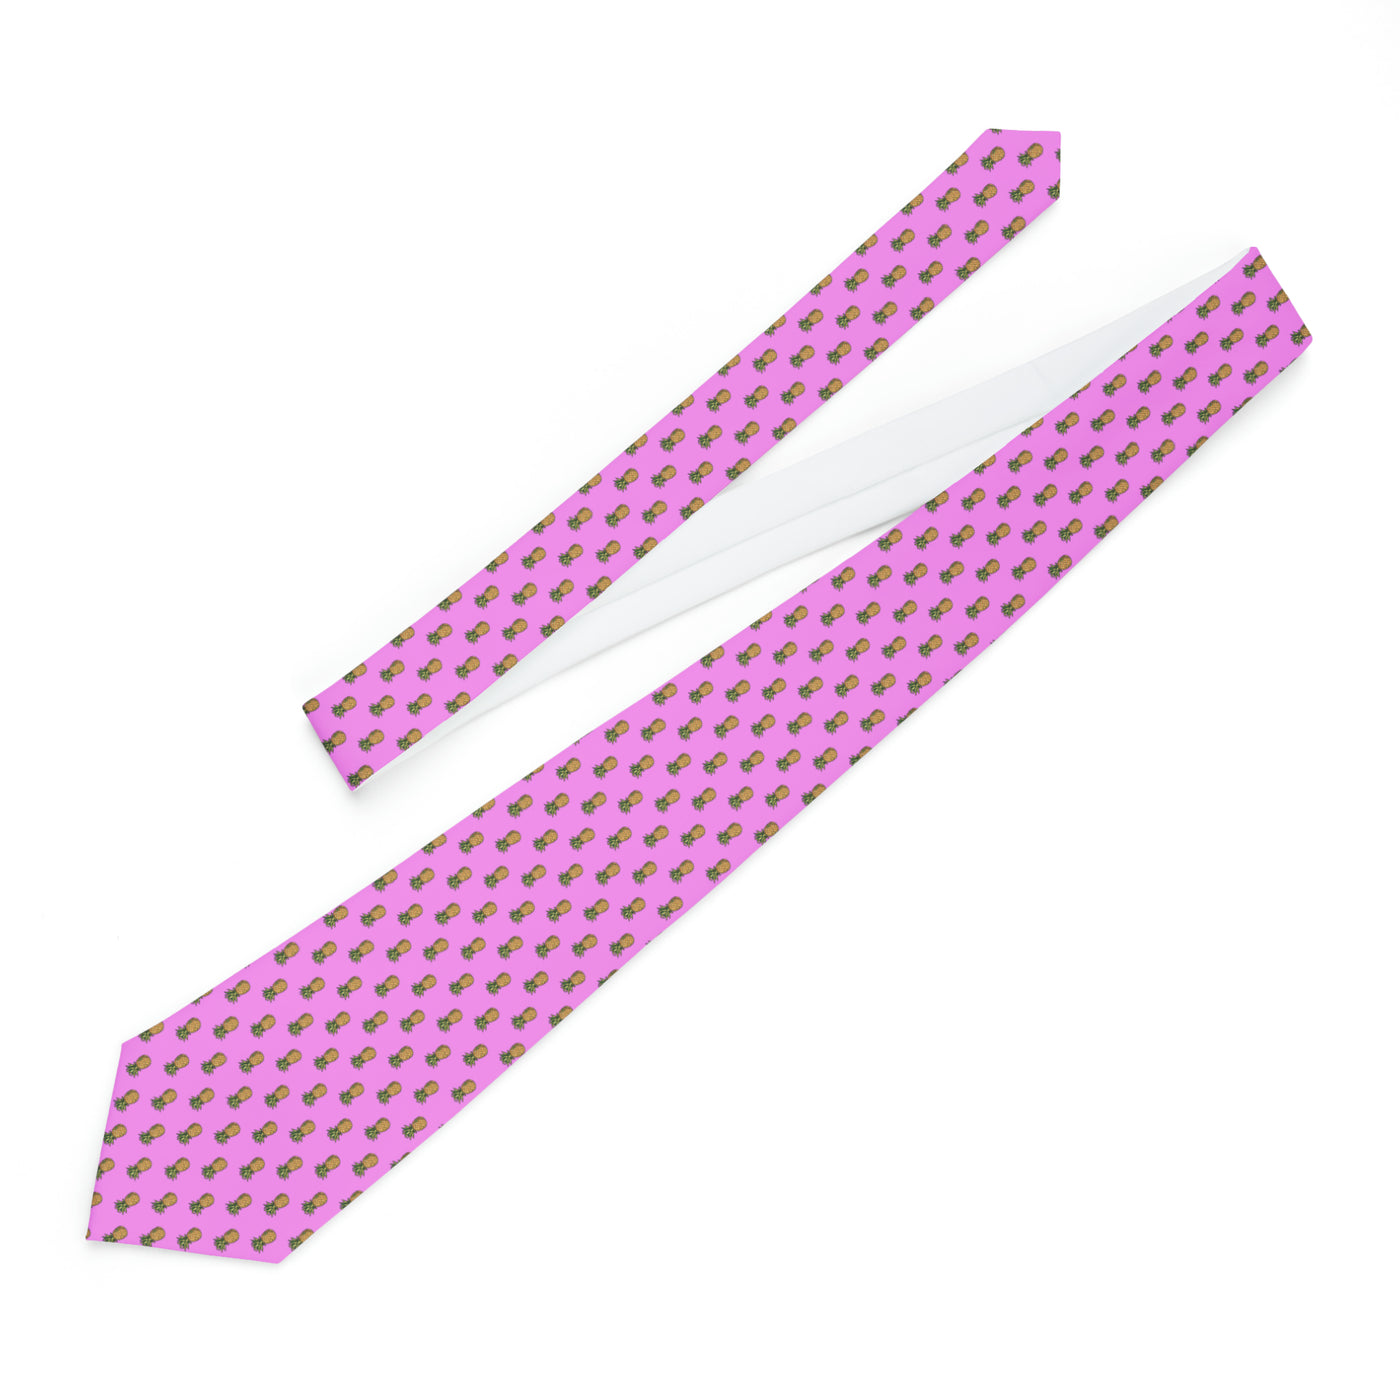 8-BIT Pink Necktie